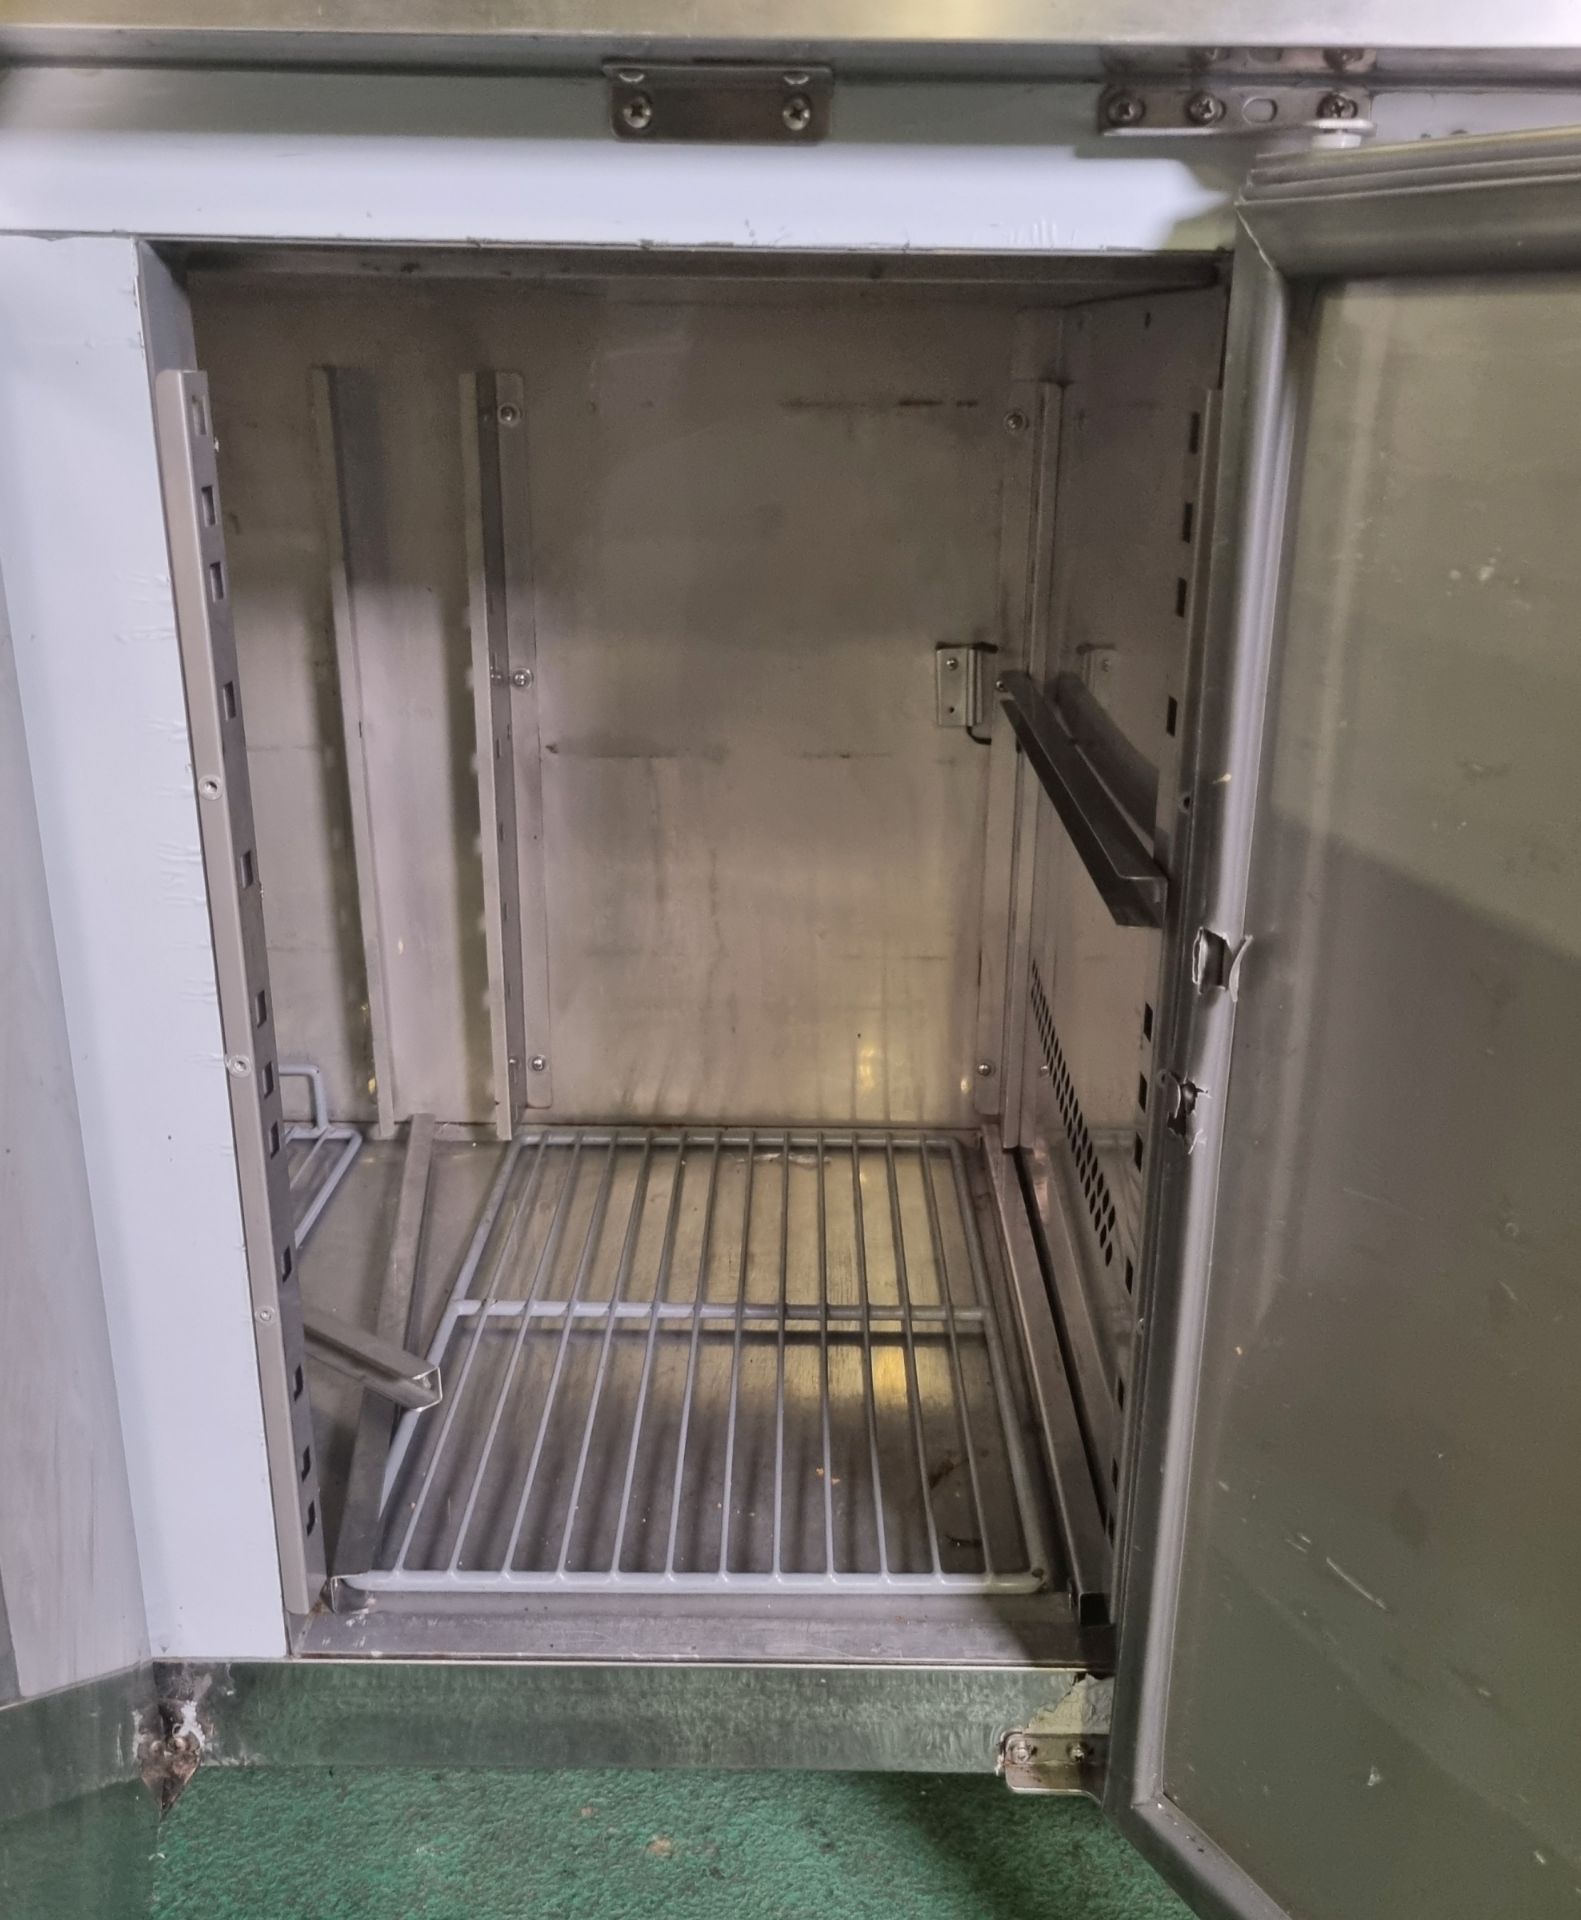 Prodis GN3100TN stainless steel 3 door counter fridge - W 1800 x D 700 x H 830mm - Bild 5 aus 6